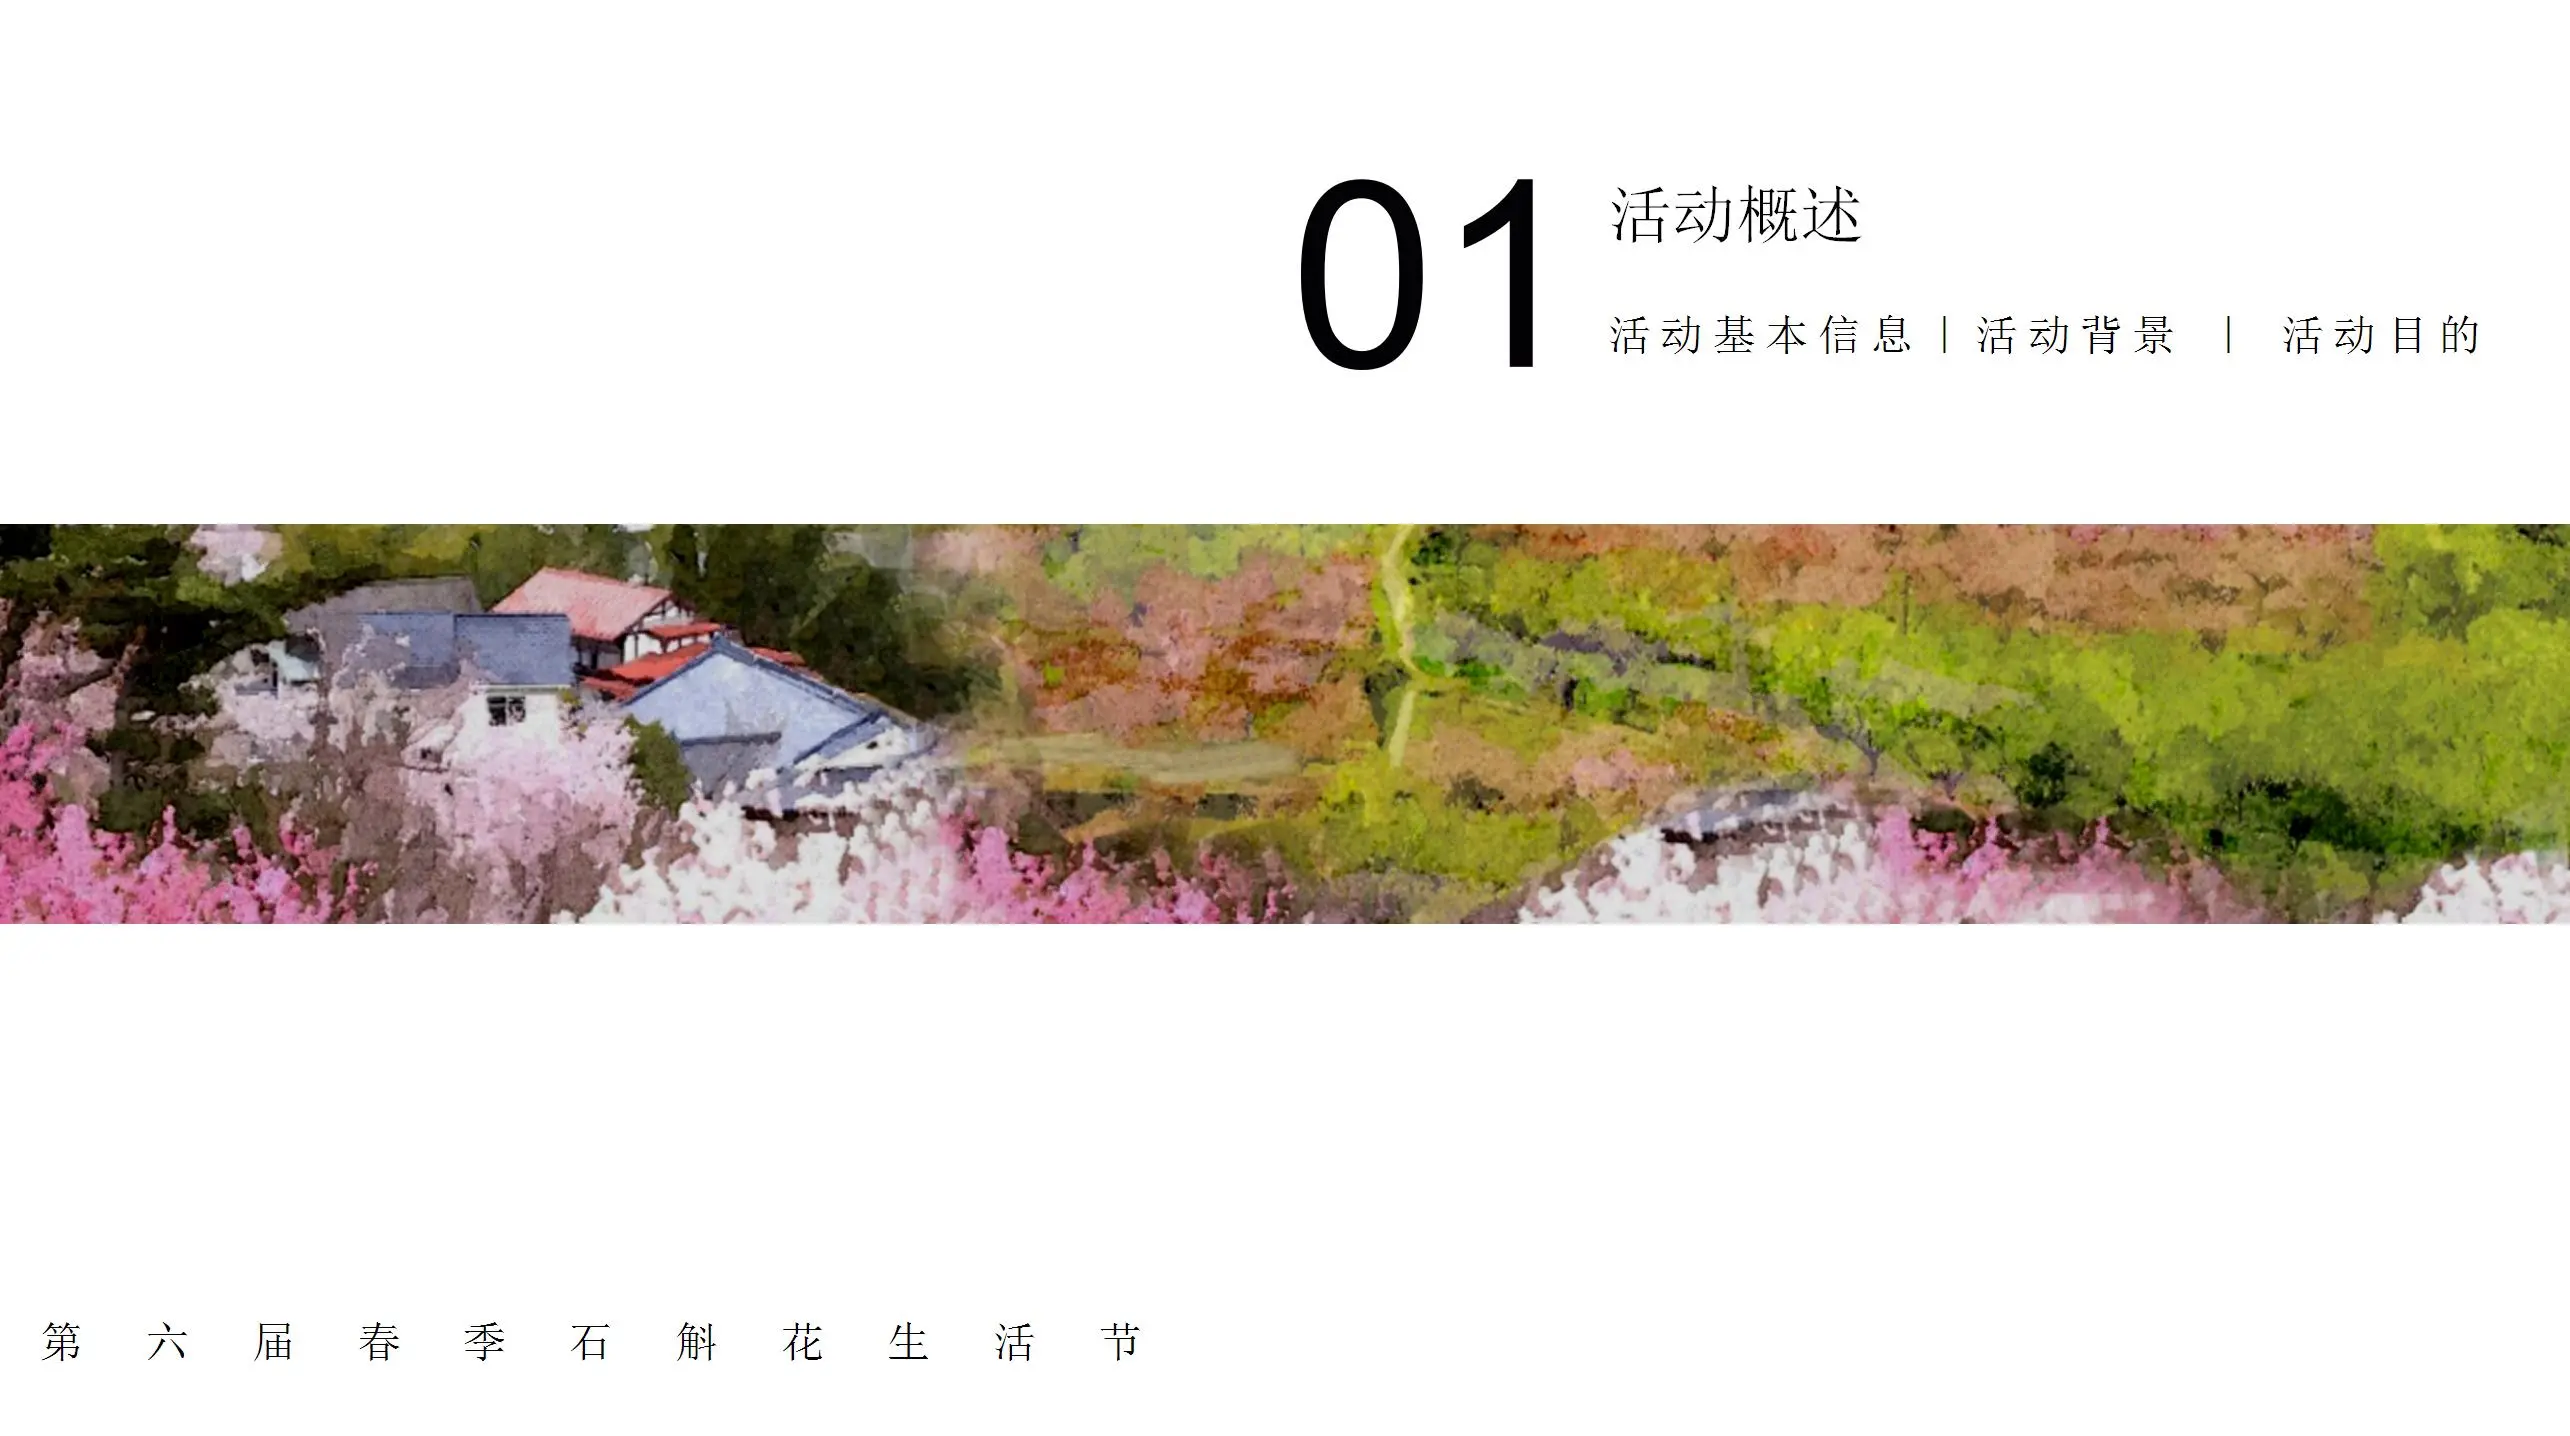 第六届春季石斛花生活节